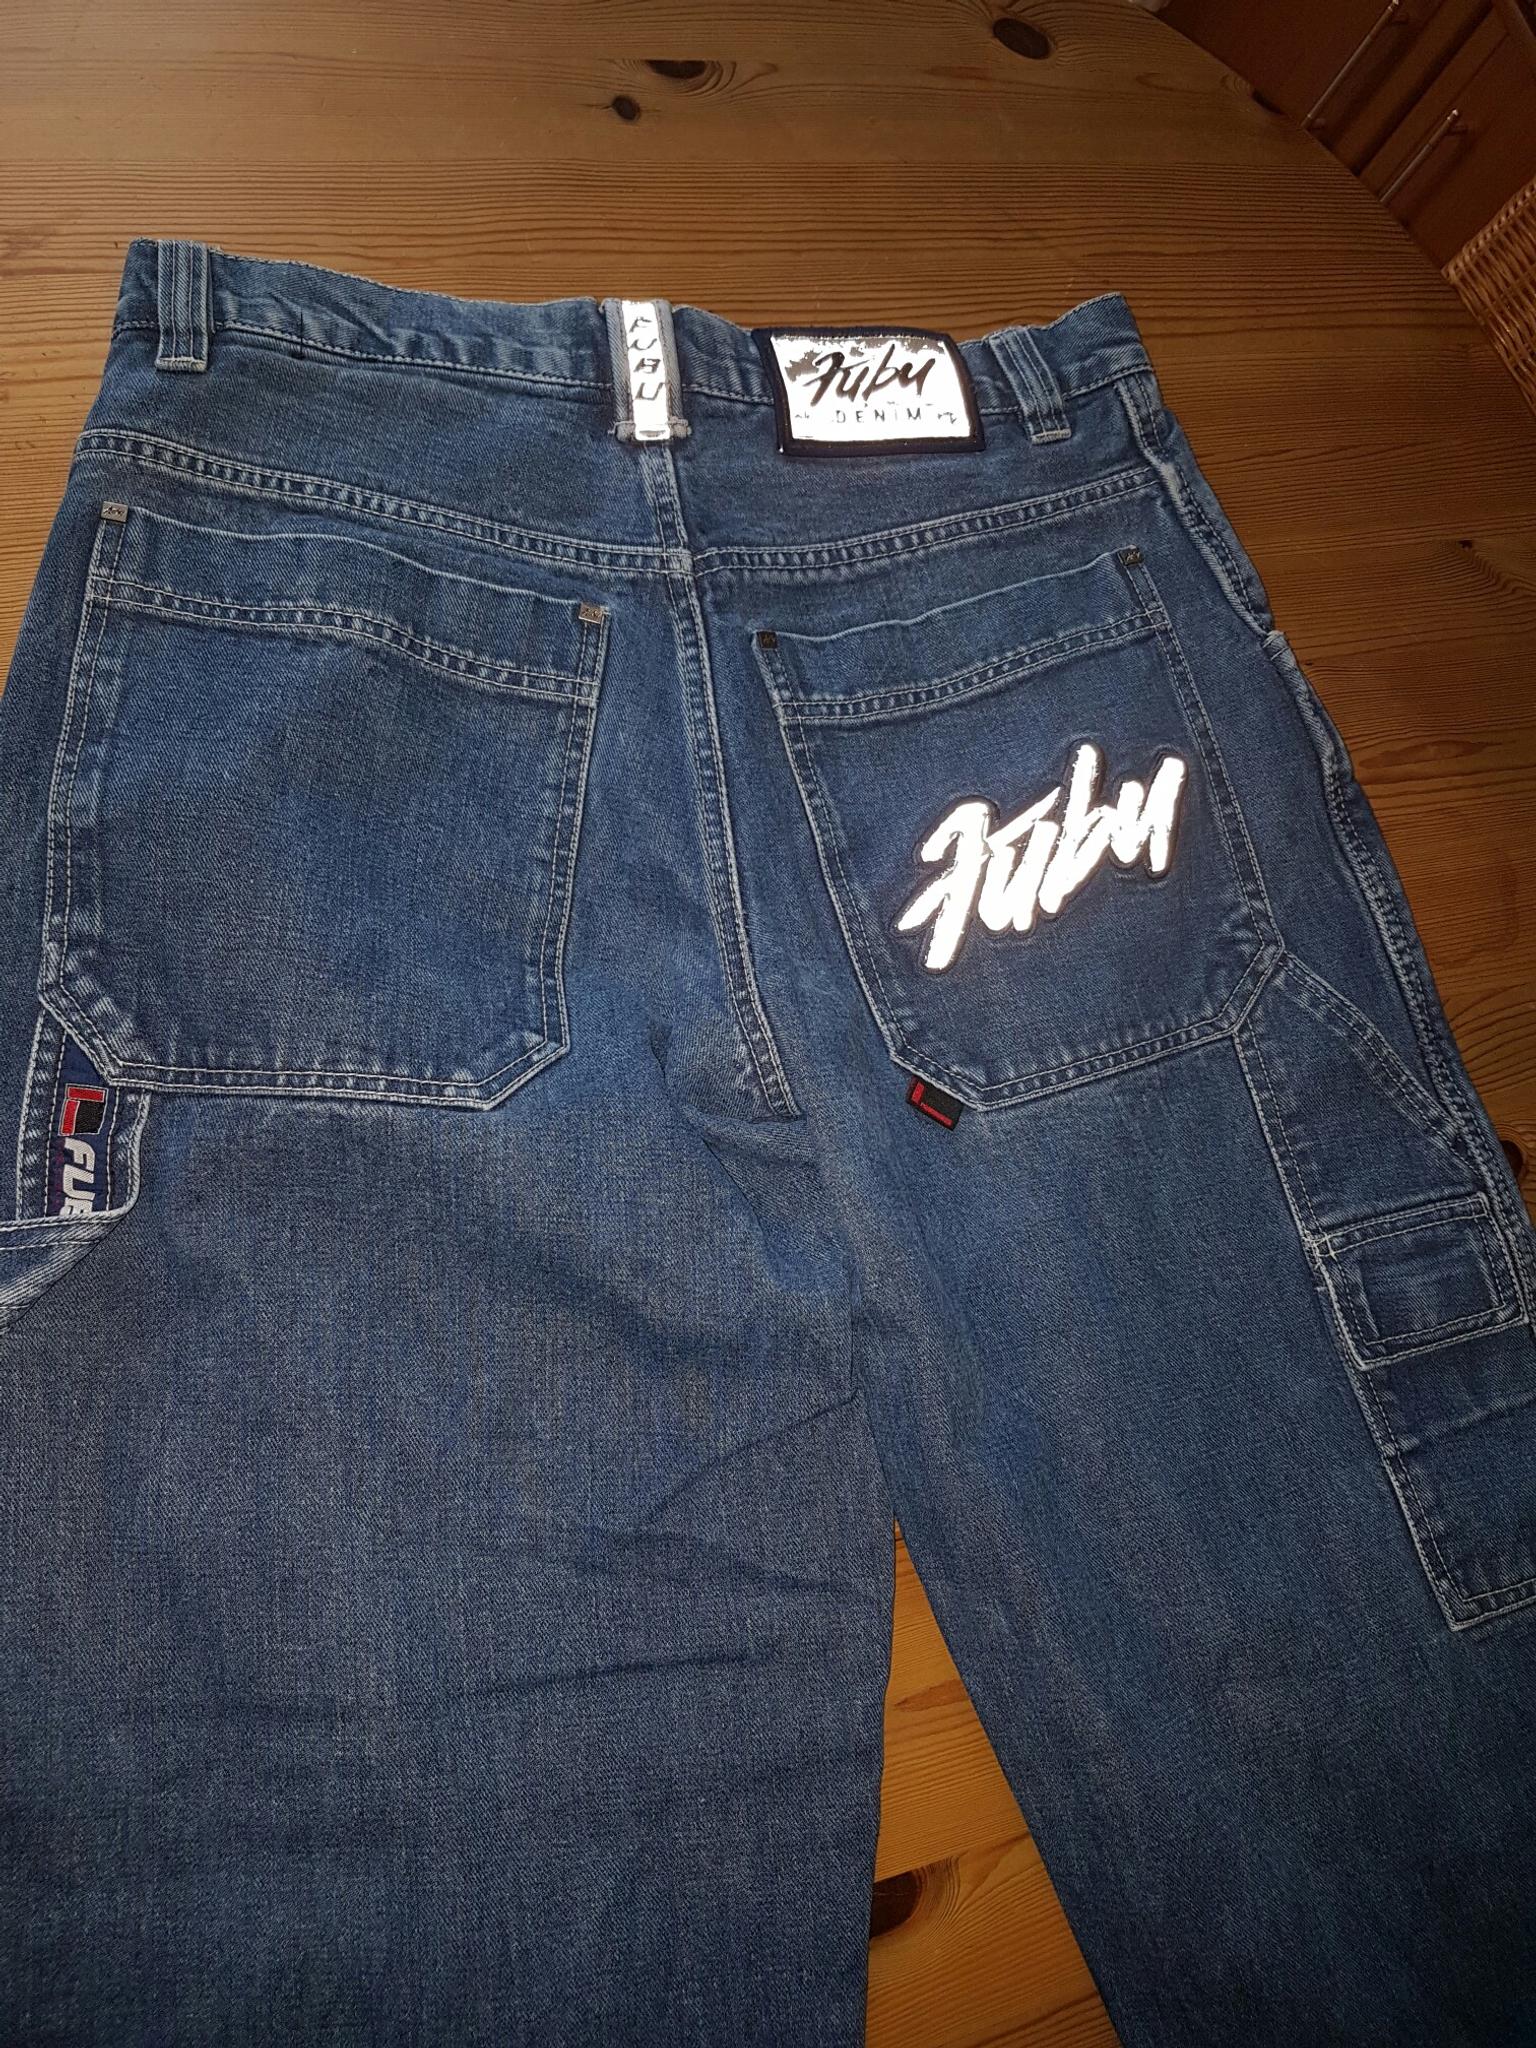 Fubu Jeans Gr32 34 90er Jahre In 374 Elbe For 80 00 For Sale Shpock